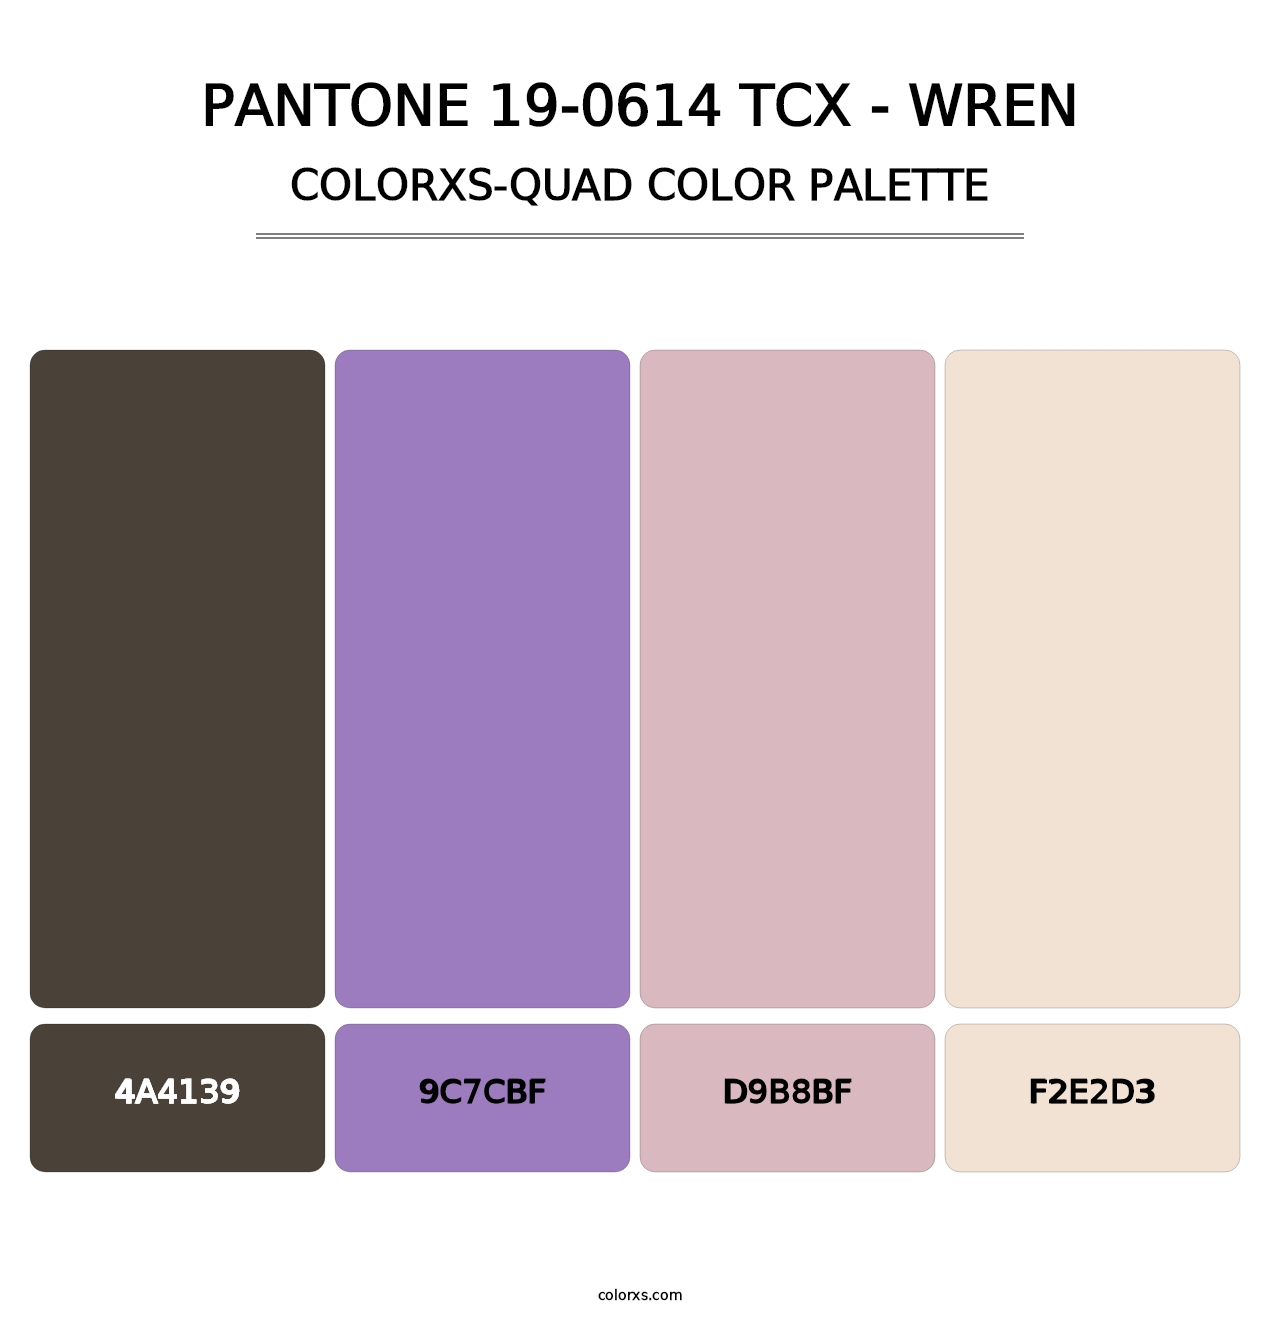 PANTONE 19-0614 TCX - Wren - Colorxs Quad Palette